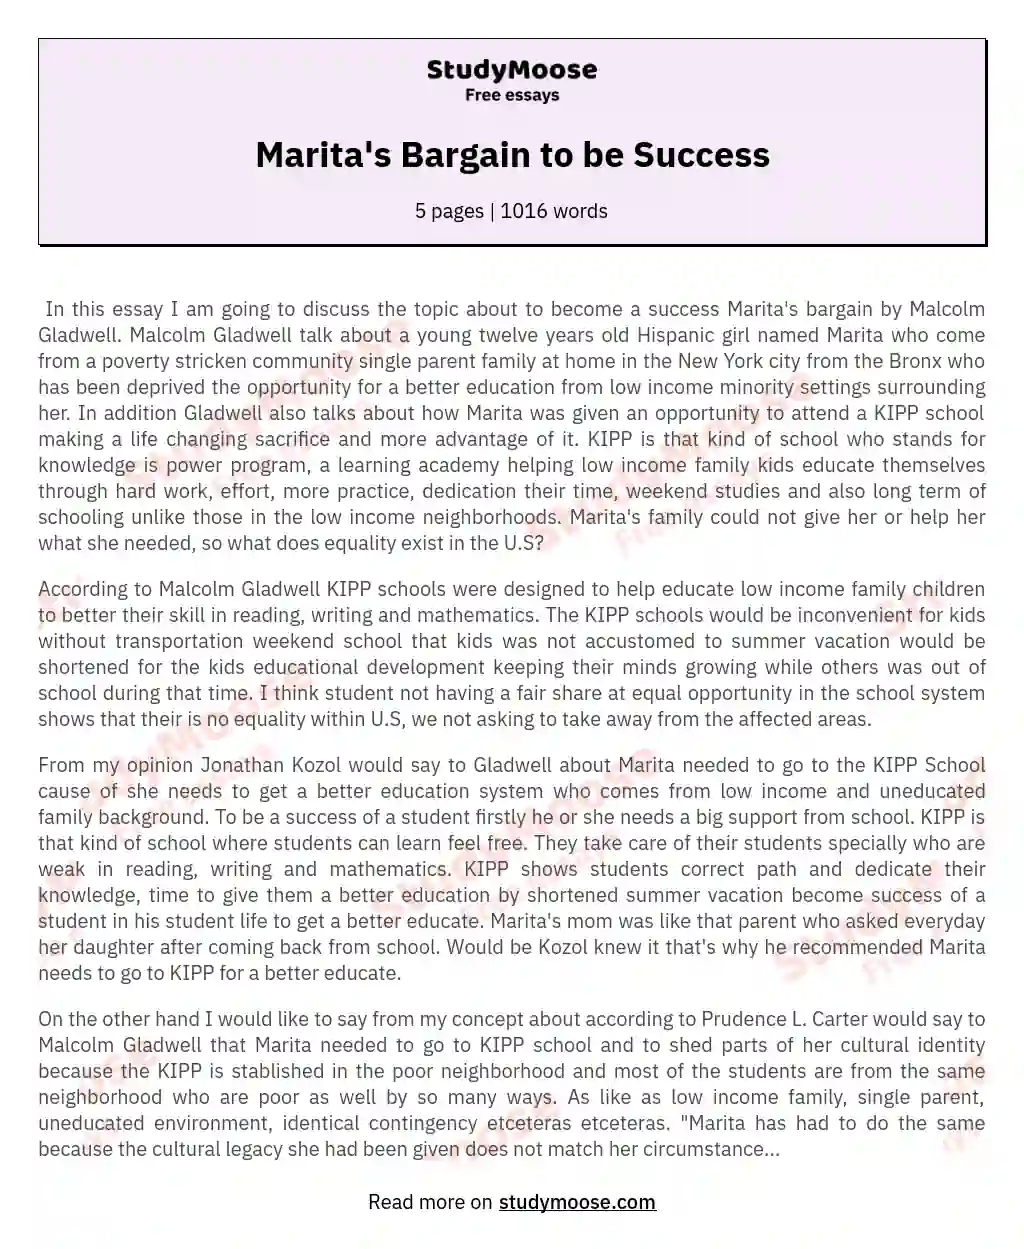 Marita's Bargain to be Success essay